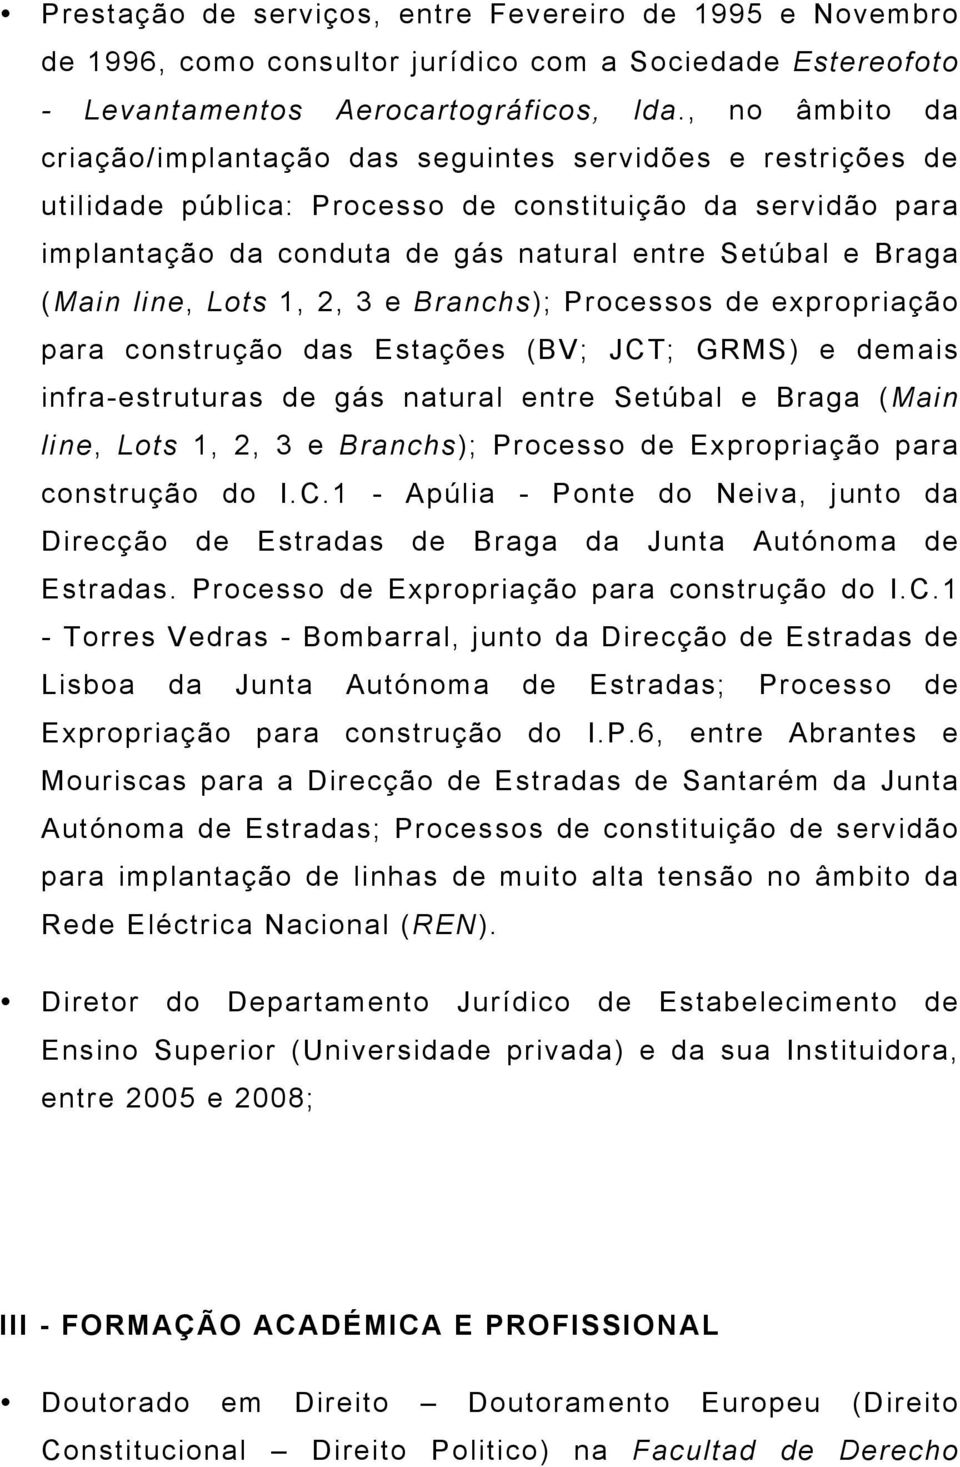 (Main line, Lots 1, 2, 3 e Branchs); Processos de expropriação para construção das Estações (BV; JCT; GRMS) e demais infra-estruturas de gás natural entre Setúbal e Braga (Main line, Lots 1, 2, 3 e